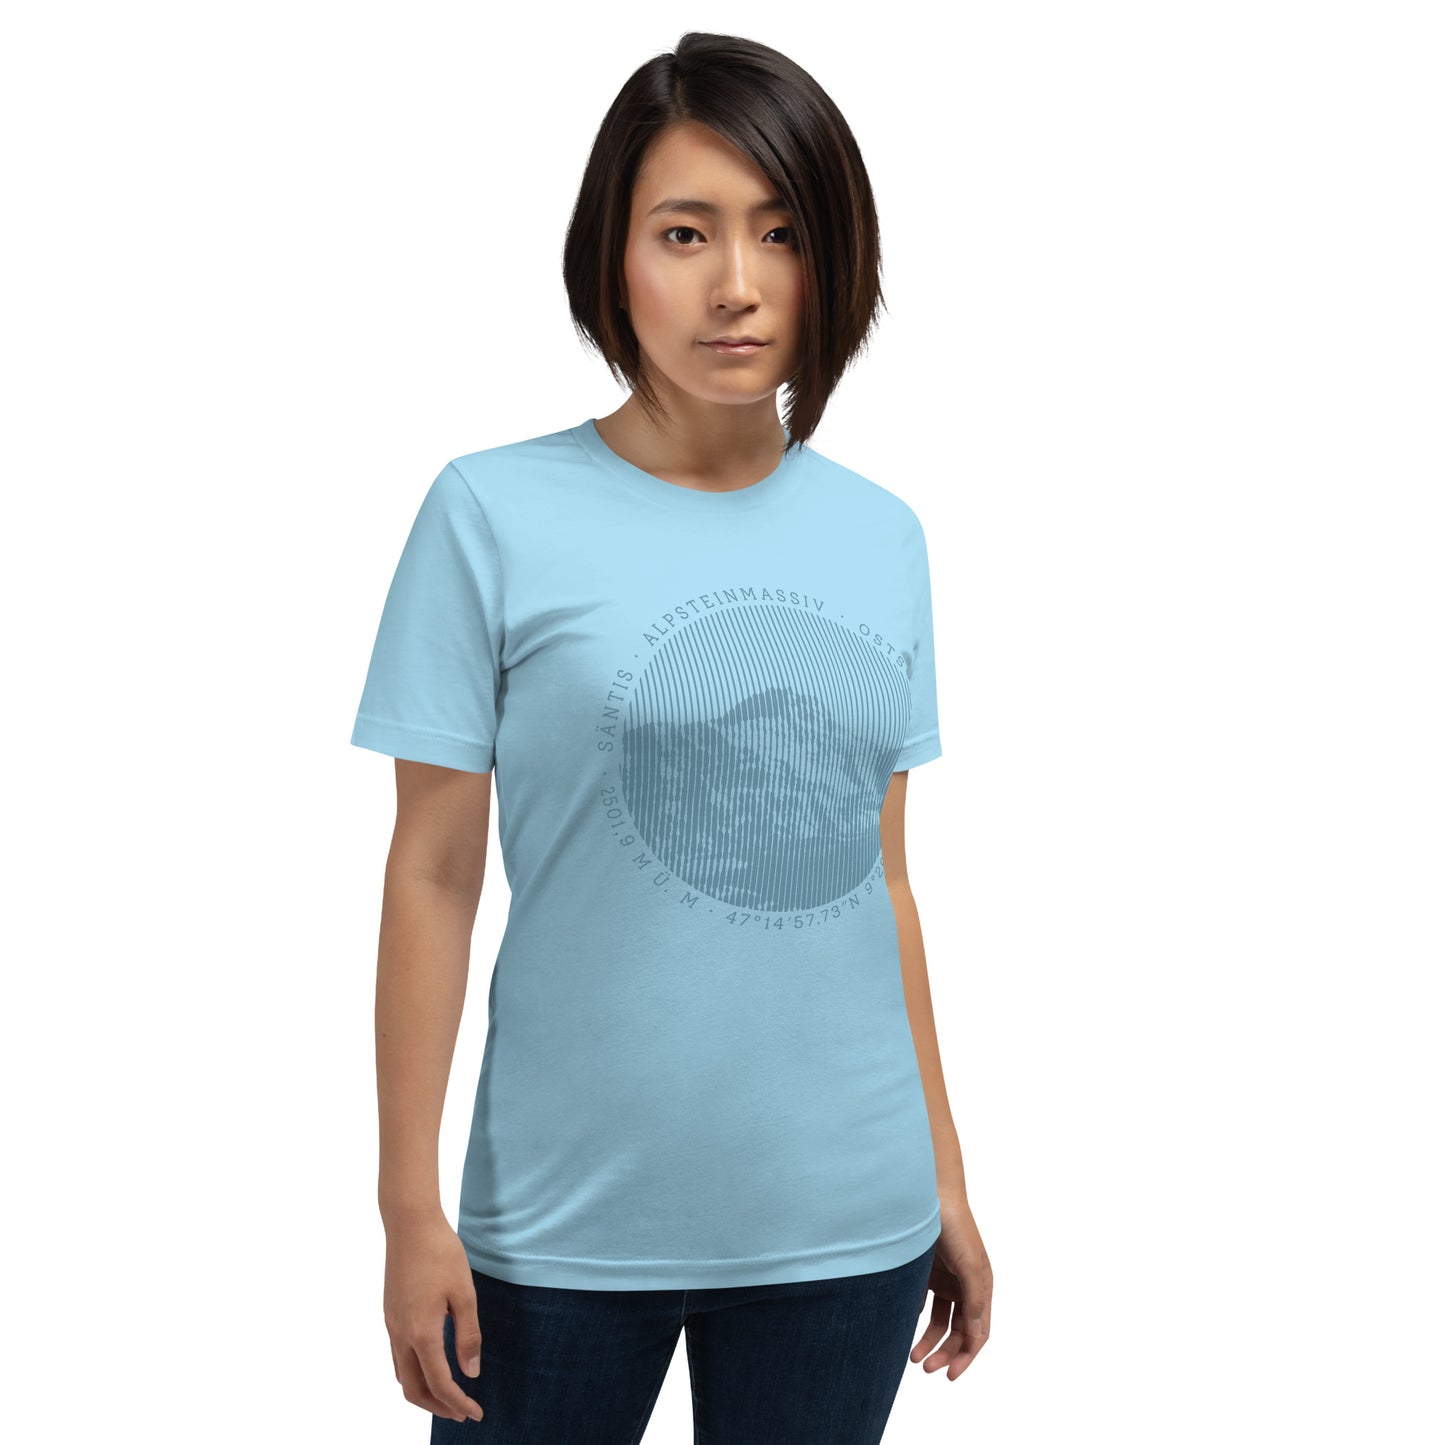 Diese Naturfreundin trägt ein hellblaues Damen T-Shirt von Vallada mit einem Aufdruck des Säntis-Gipfels. Dieses T-Shirt ist ein Ausdruck ihres Enthusiasmus für die Region des Alpsteins.